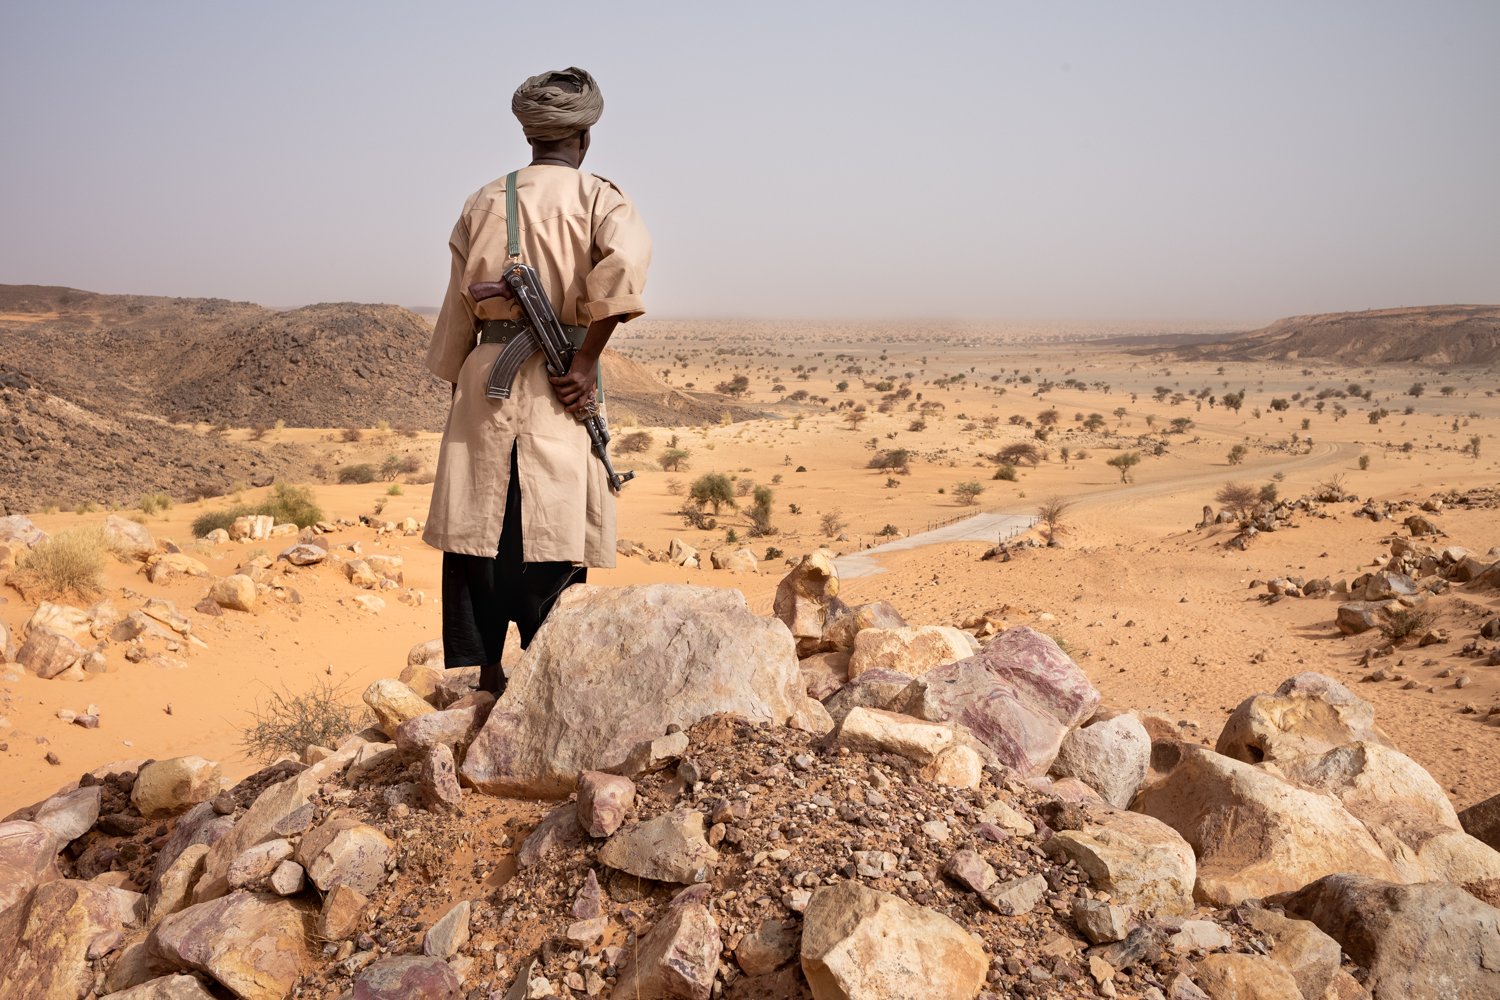  Ein sogenannter Meharist, ein Mitglied der mauretanischen Nationalgarde, überwacht 2022 im Grenzgebiet zu Mali das Terrain. 